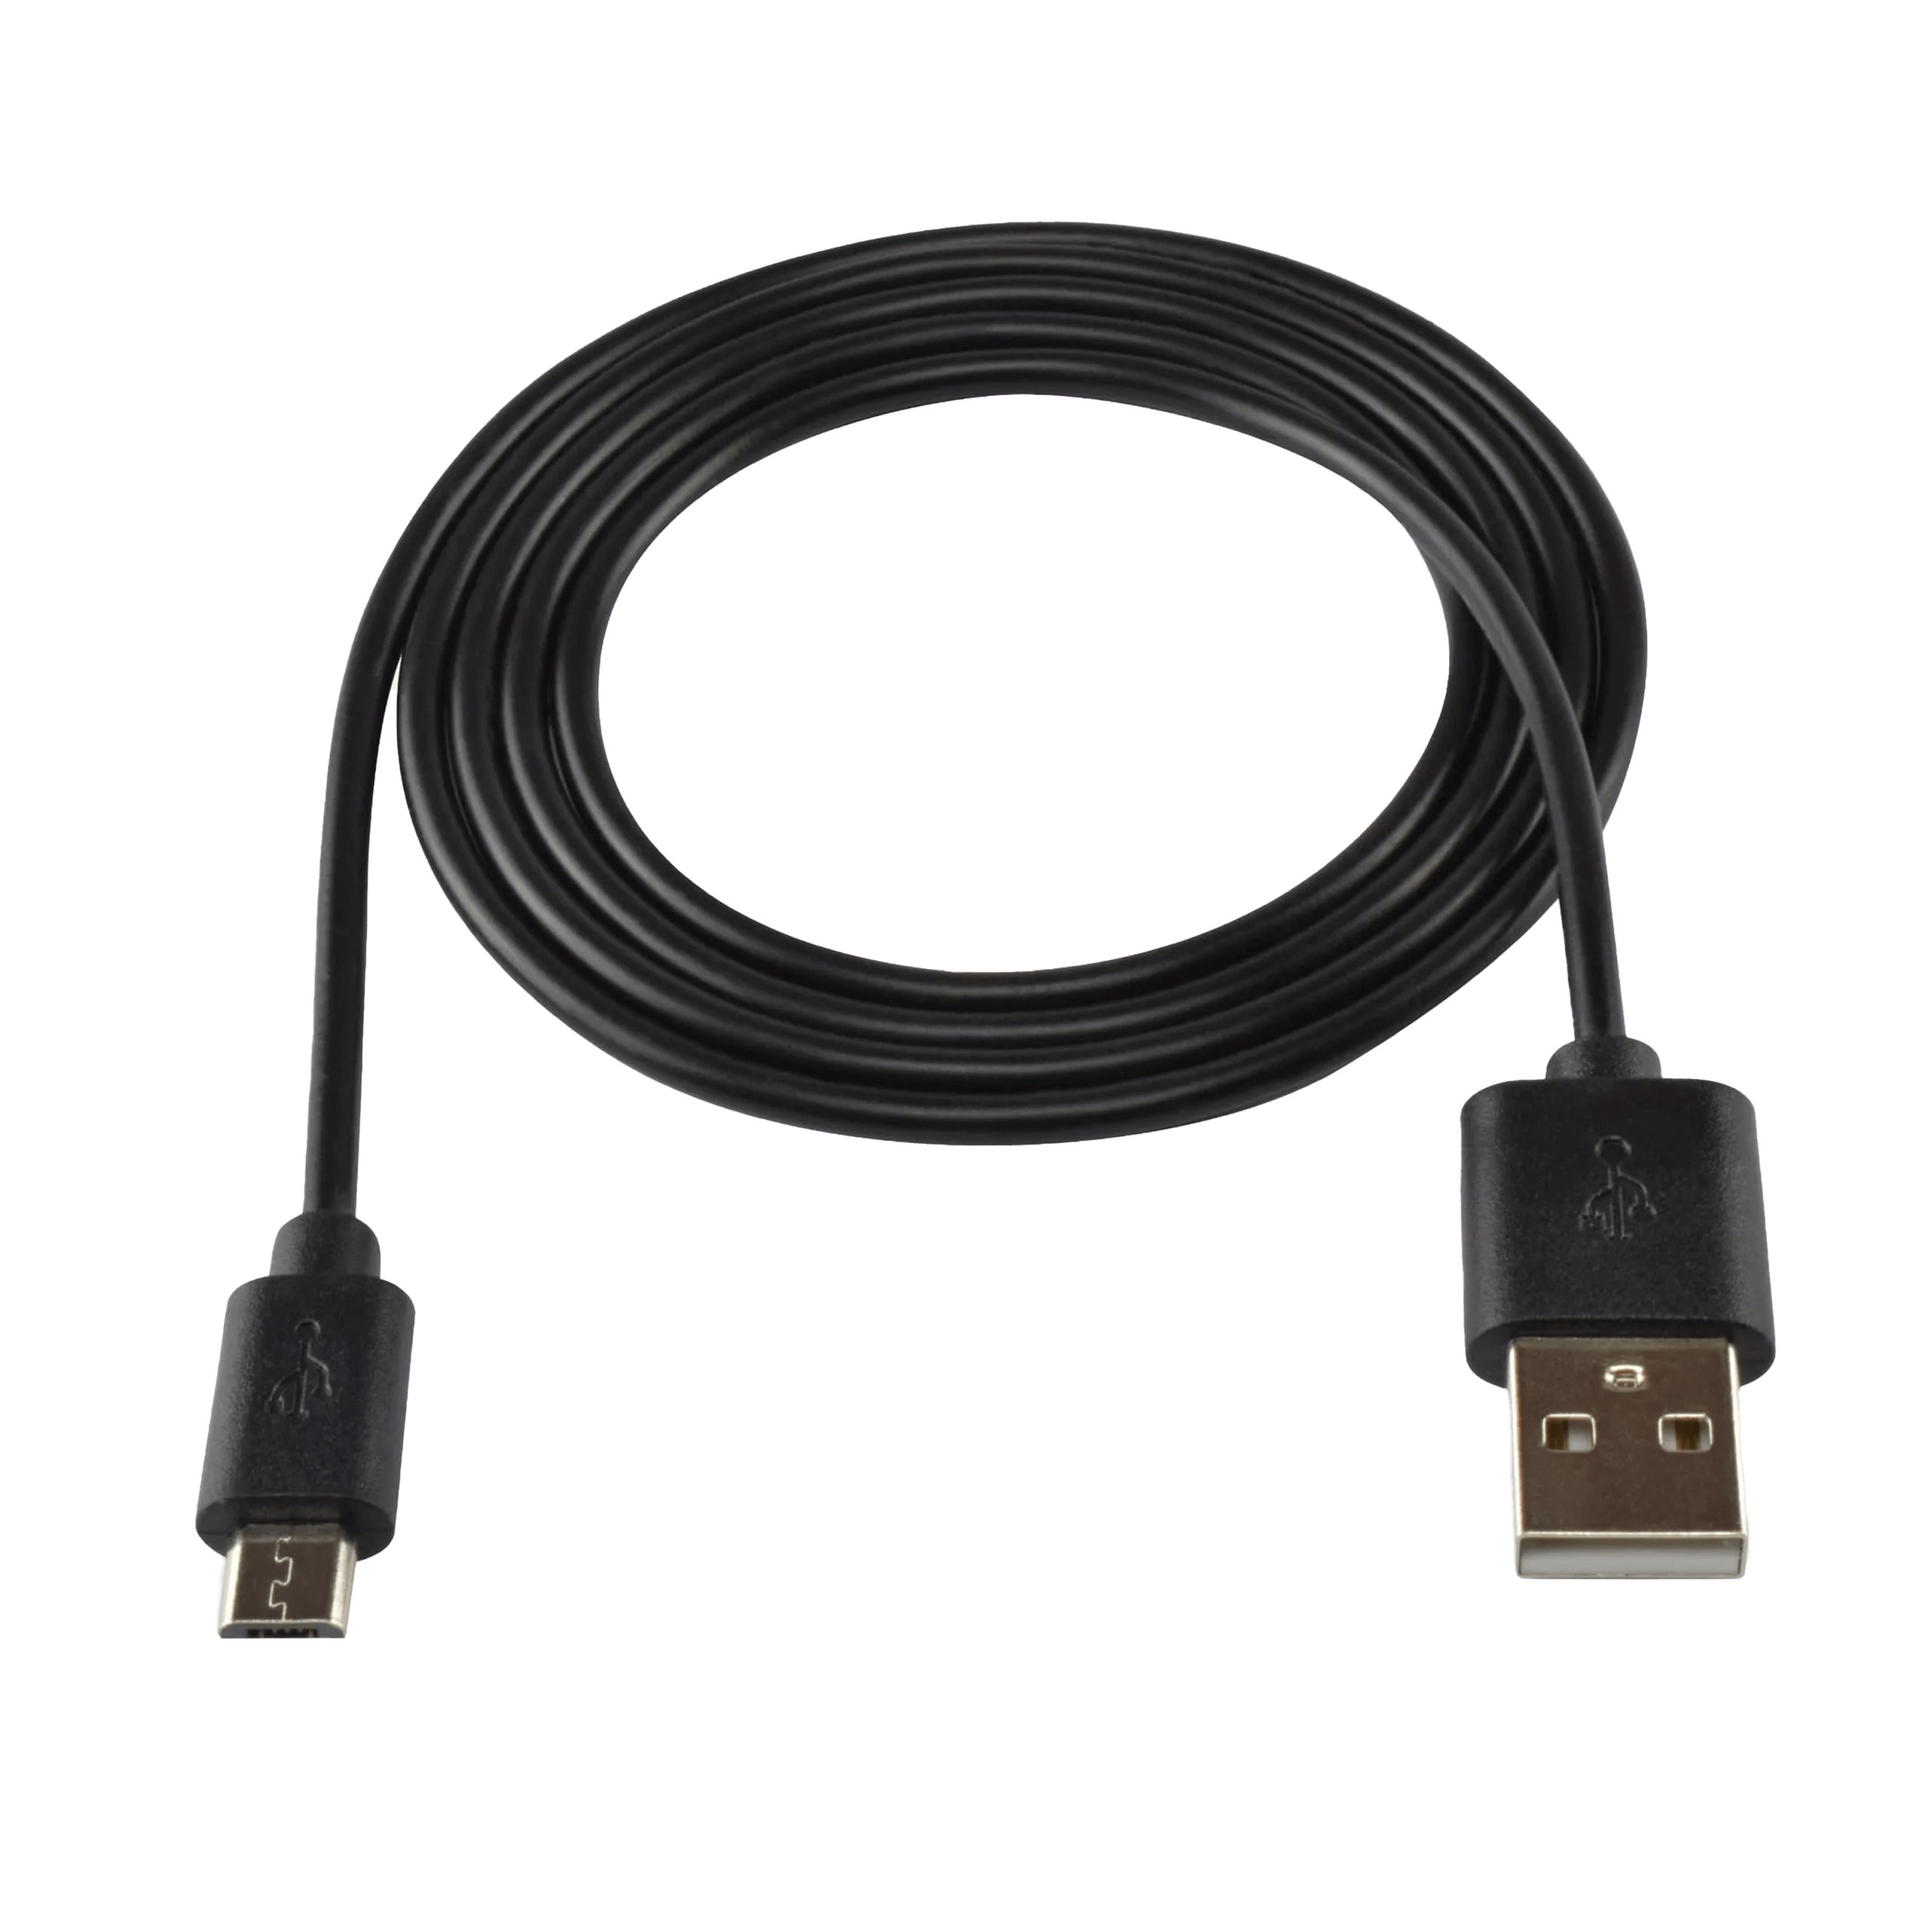 Produktbild ohne Hintergrund Ersatz-USB-Ladekabel- für PAJ GPS Tracker